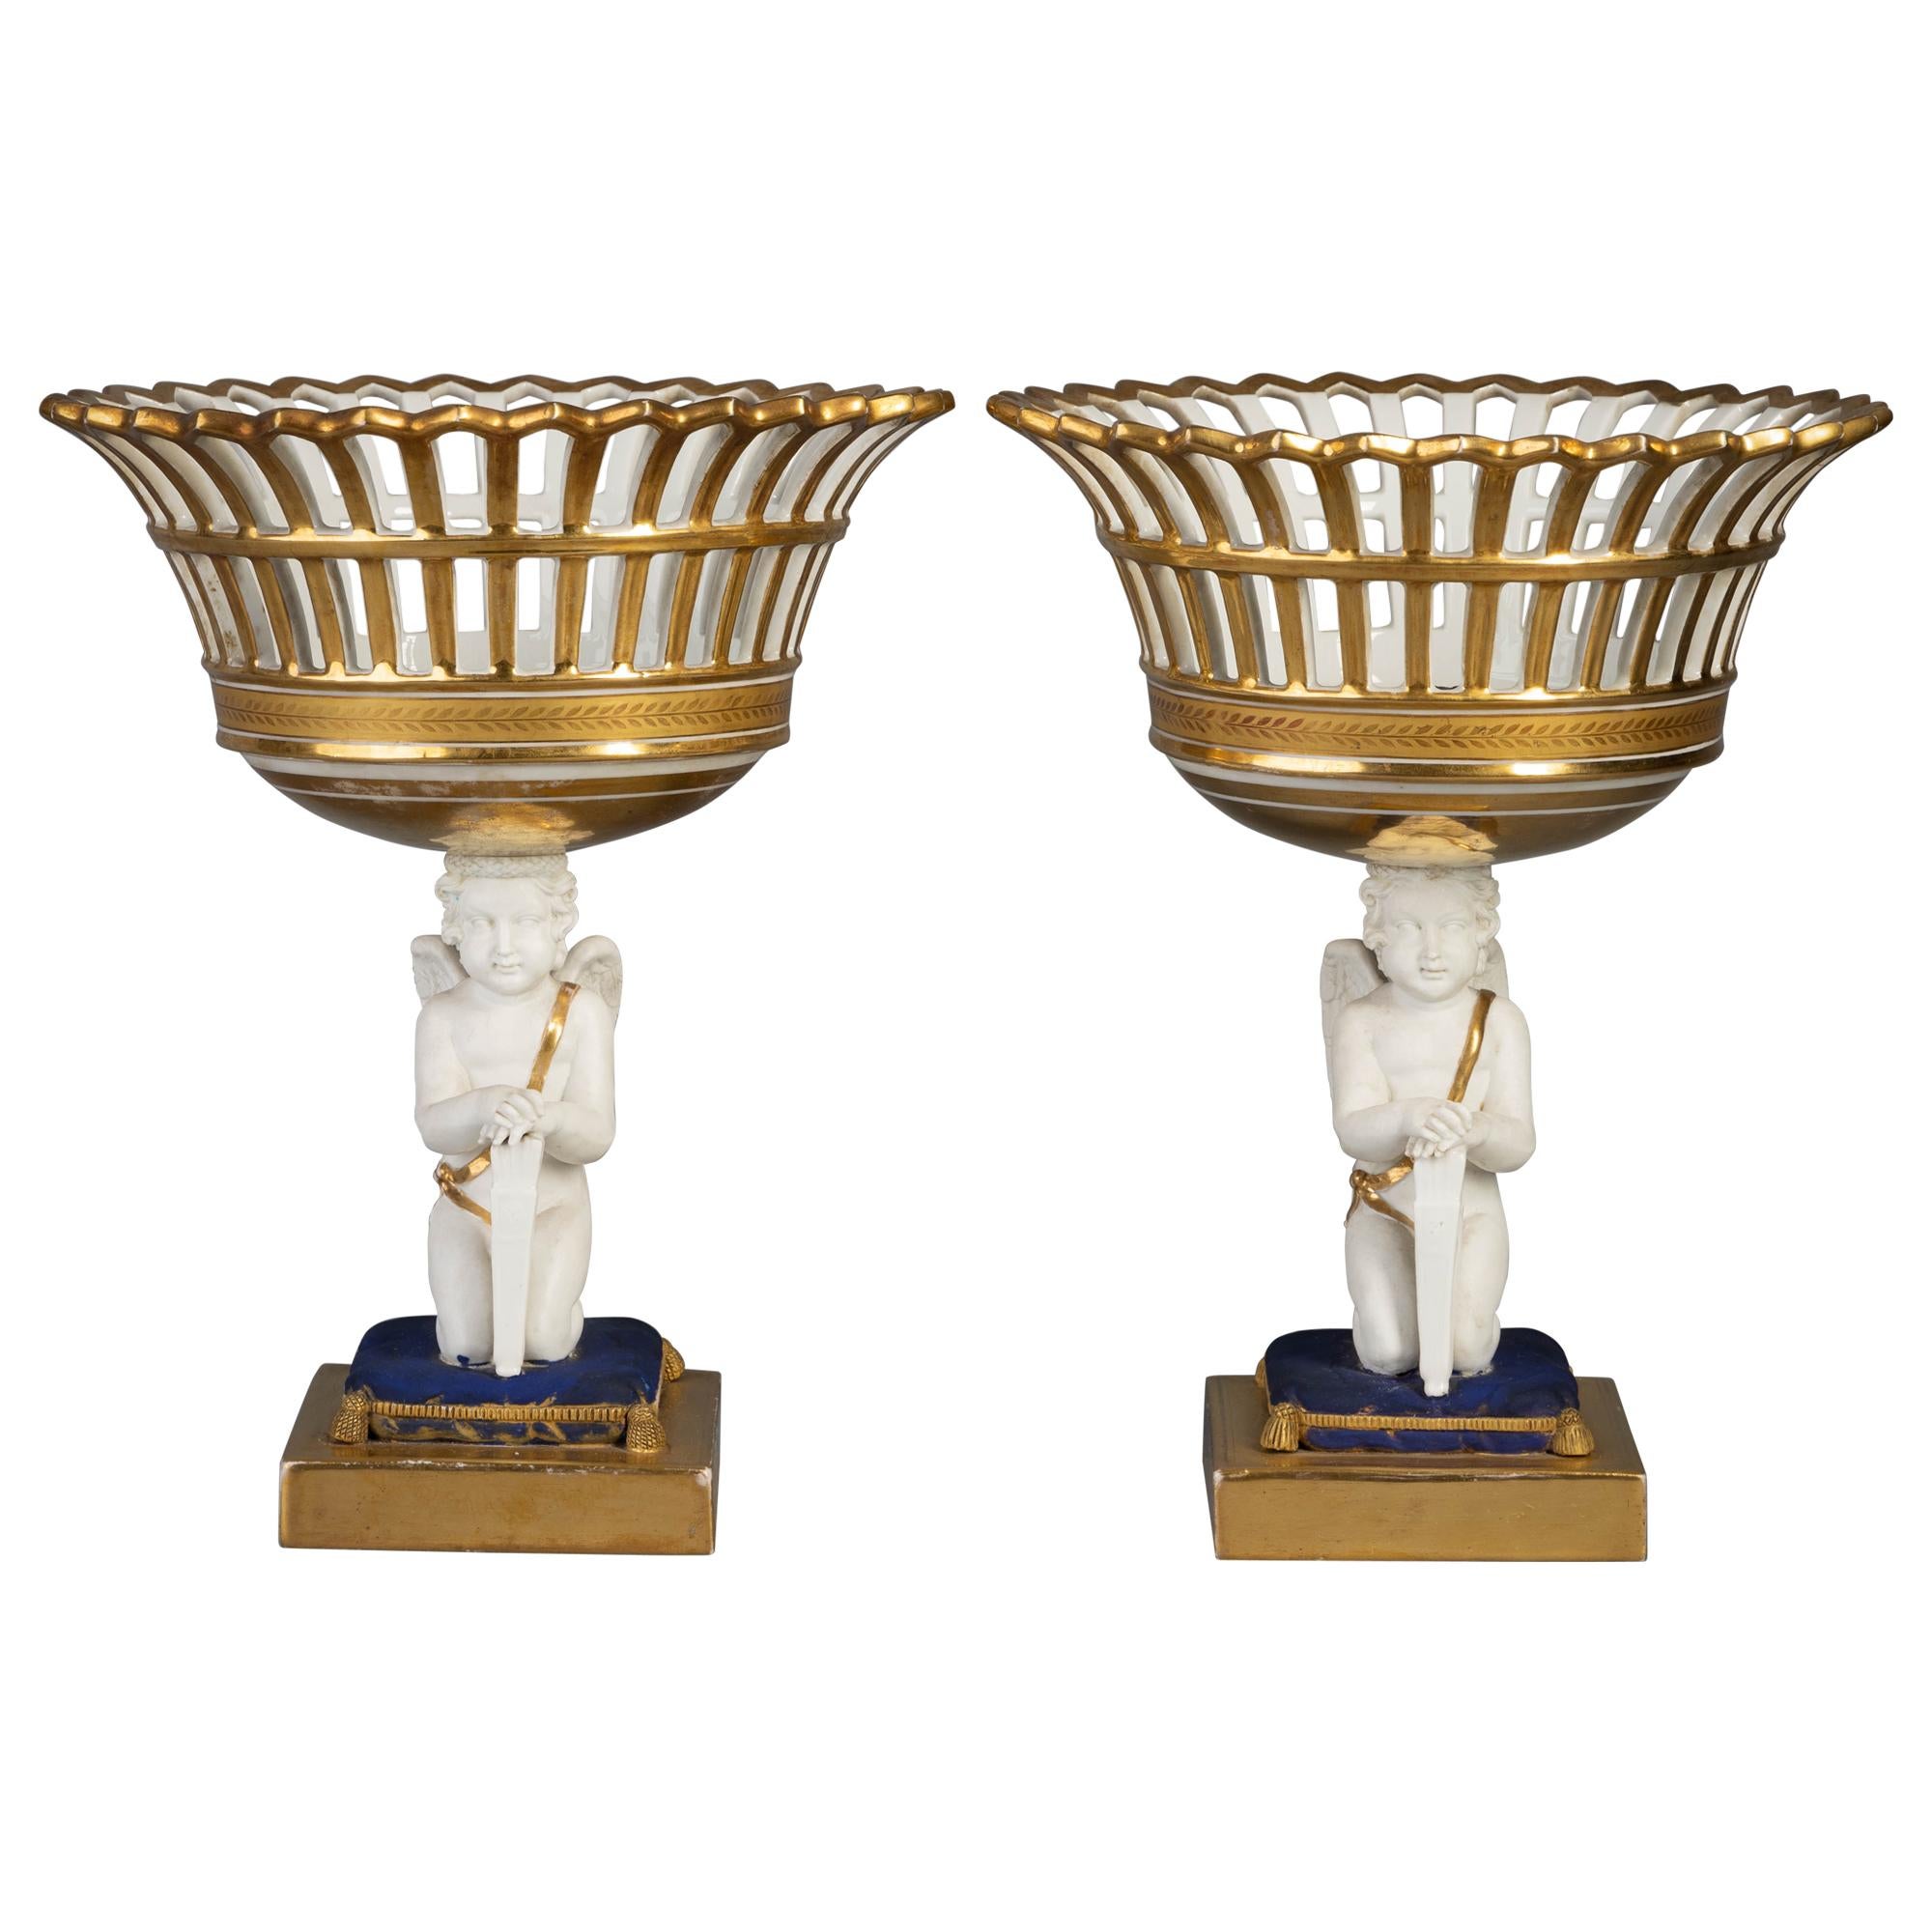 Pair of Paris Porcelain Figural Baskets, circa 1840